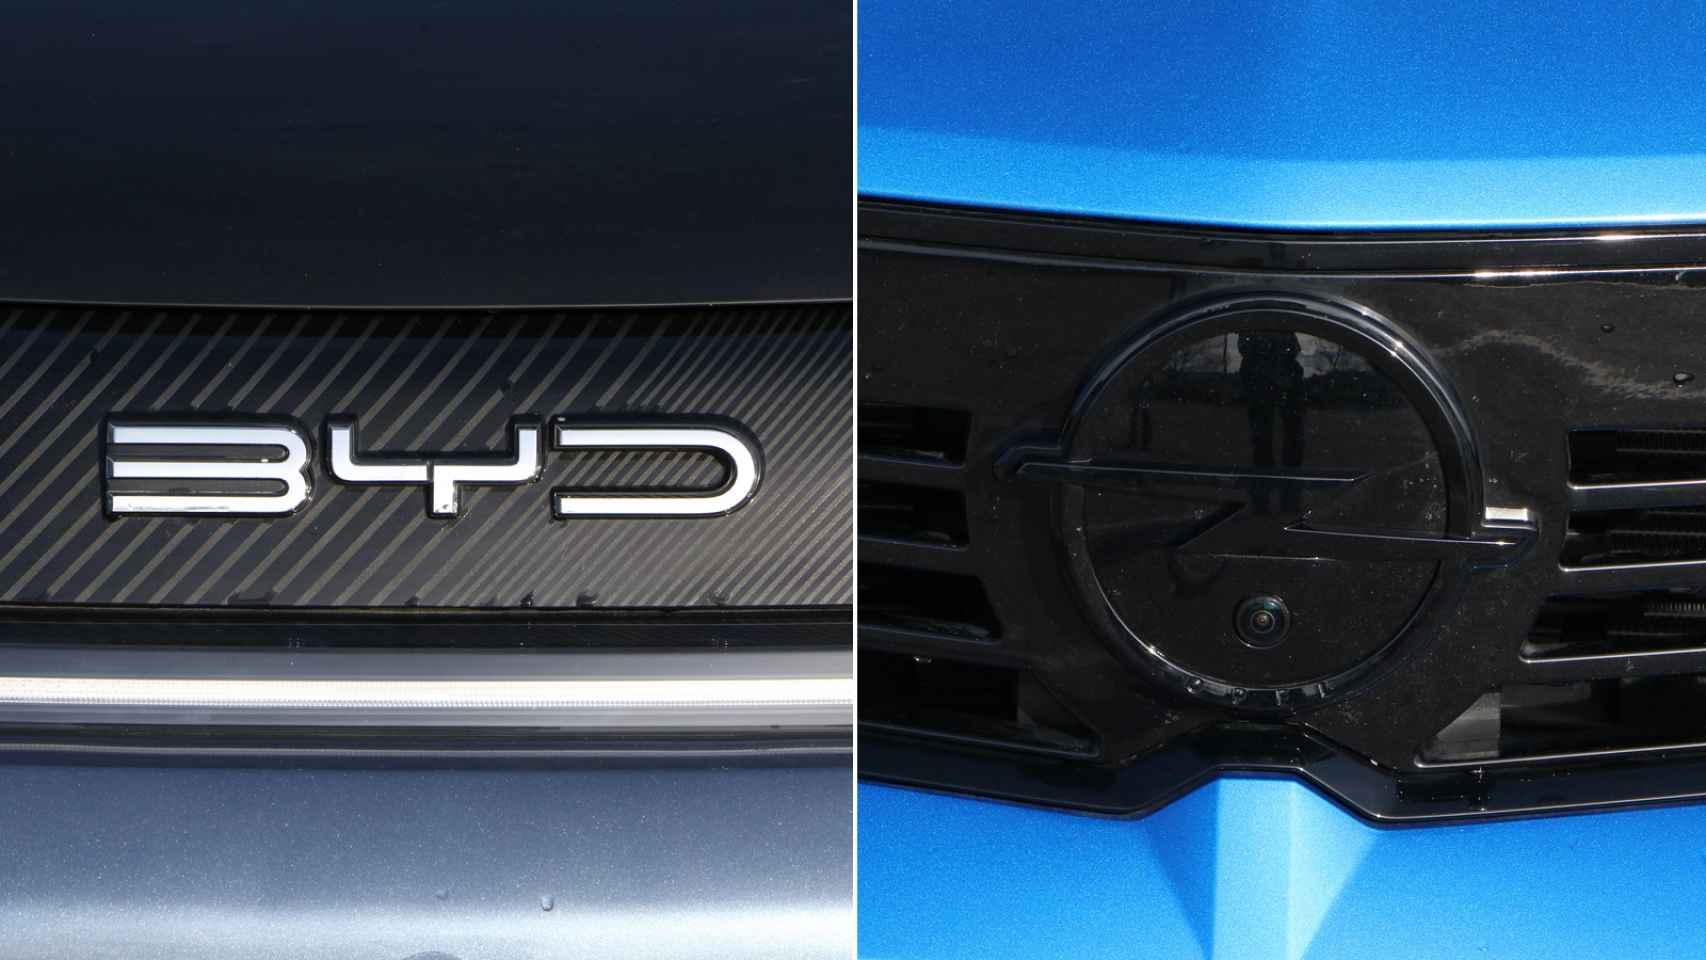 Diferentes emblemas en ambos coches.